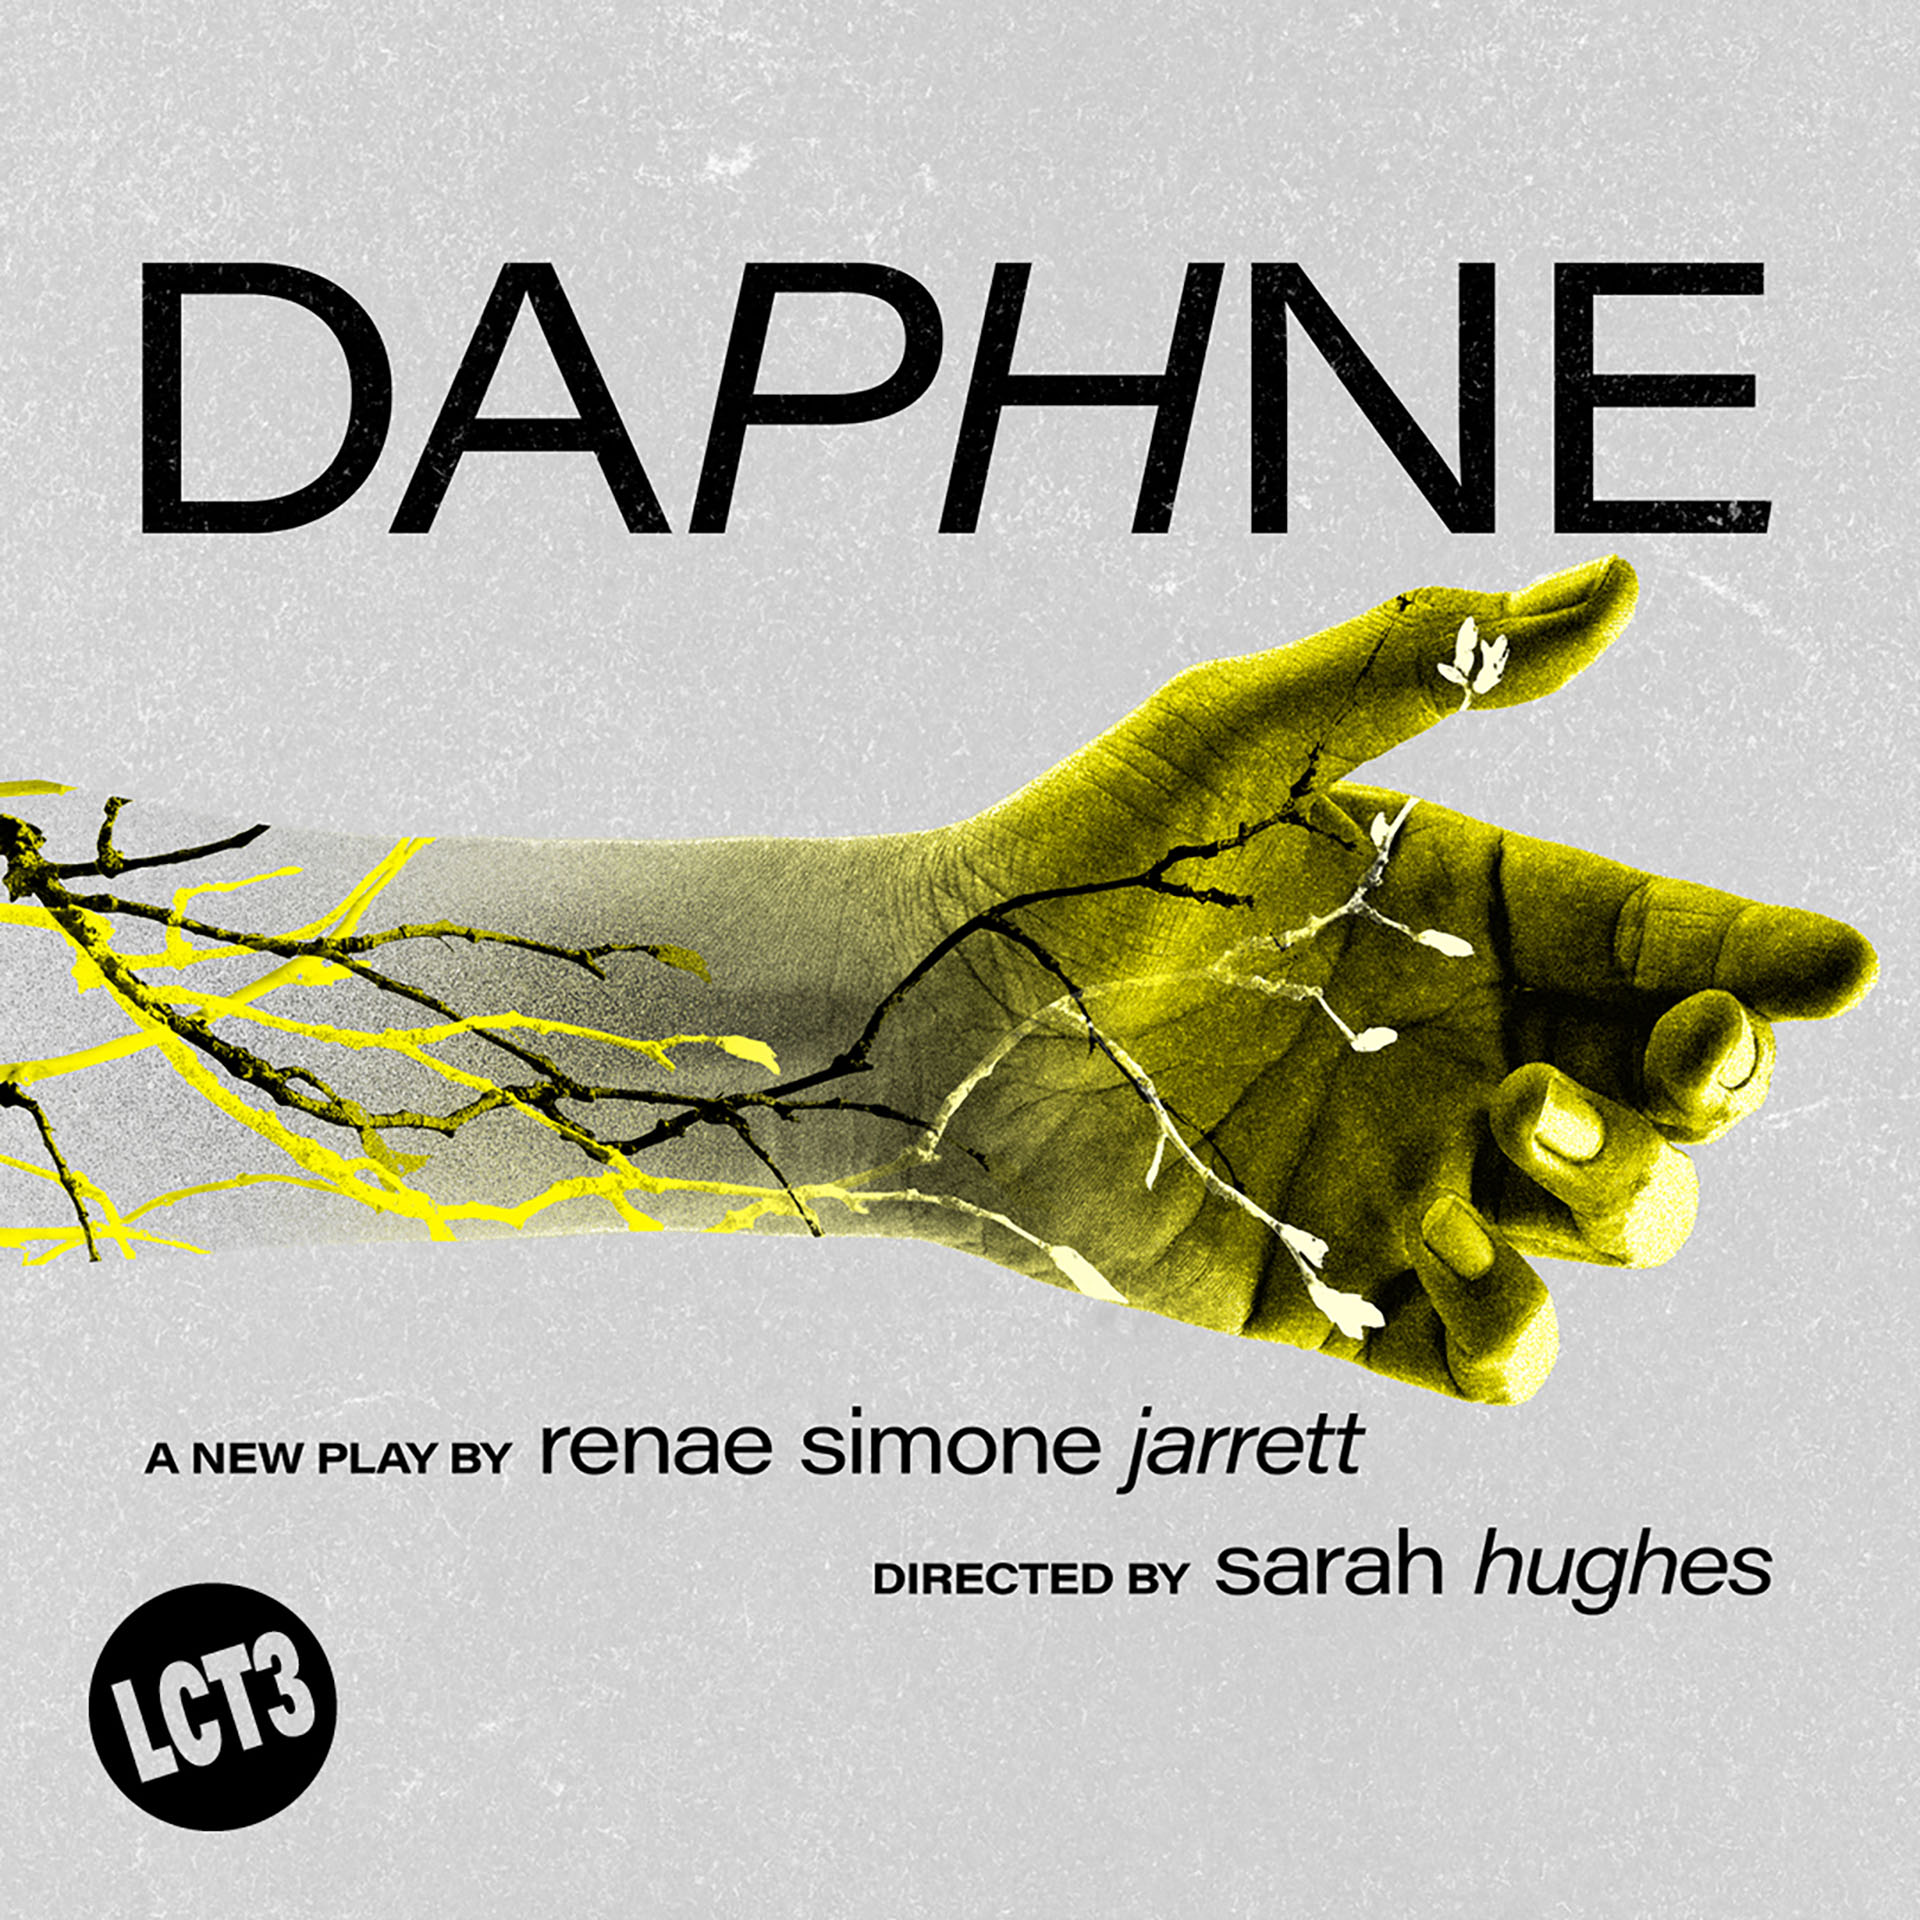 Daphne at LCT3